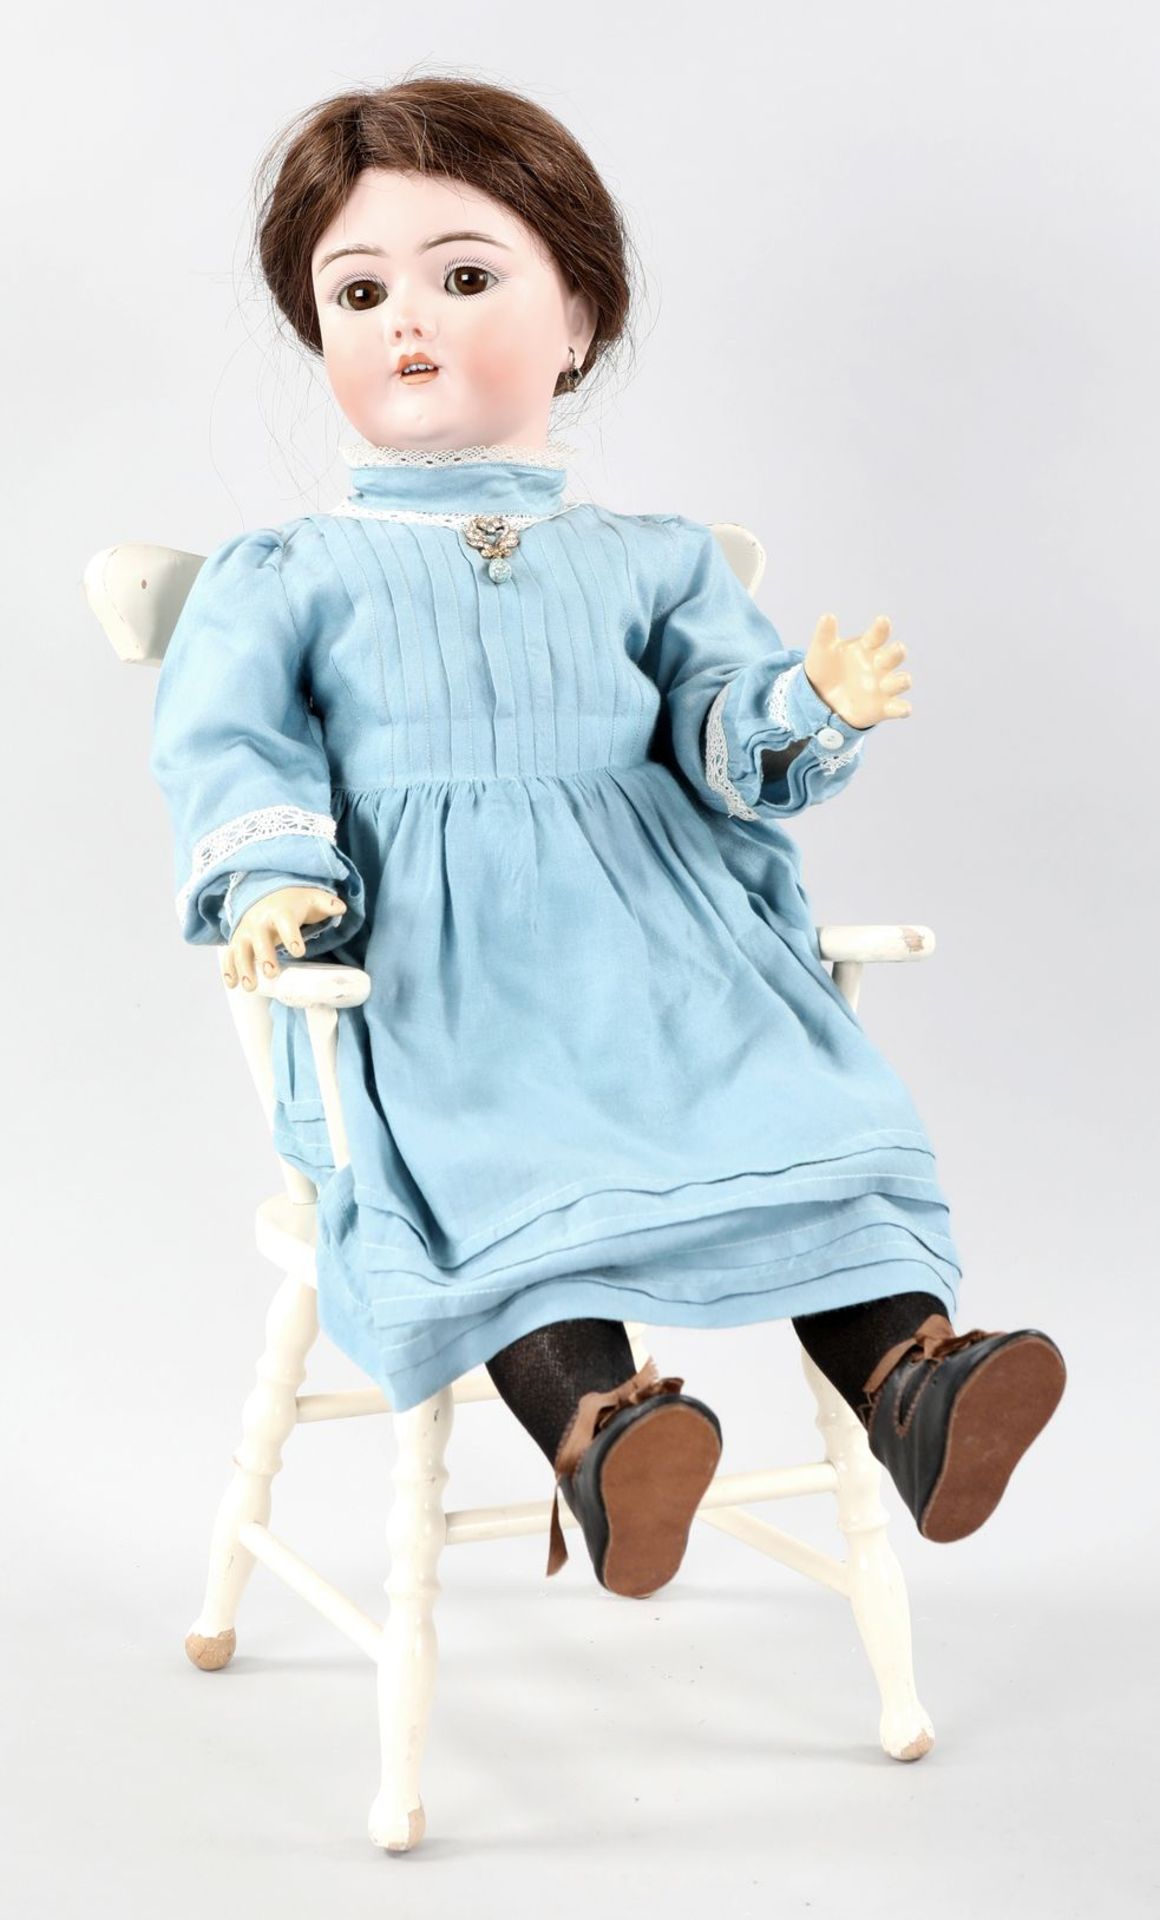 Porzellankopf-Puppe auf Puppenstuhl